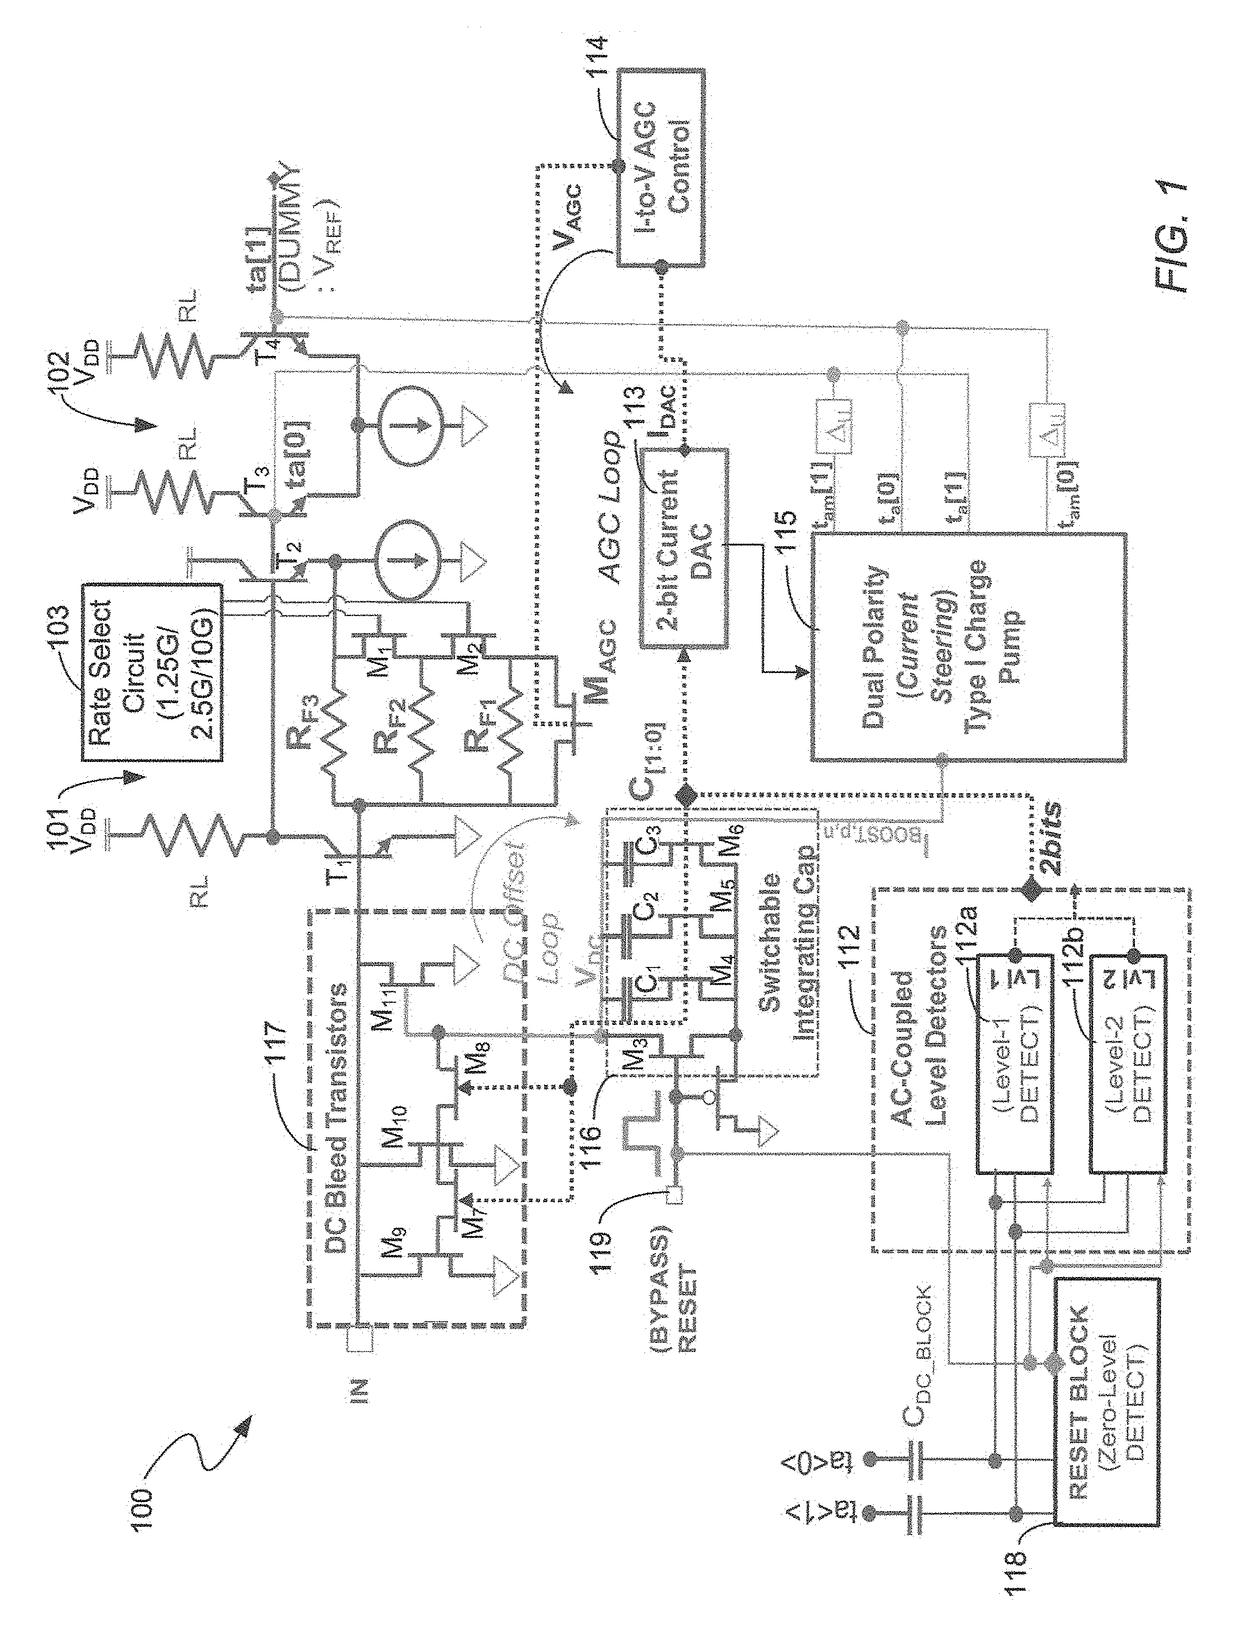 Multi-data rate, burst-mode transimpedance amplifier (TIA) circuit